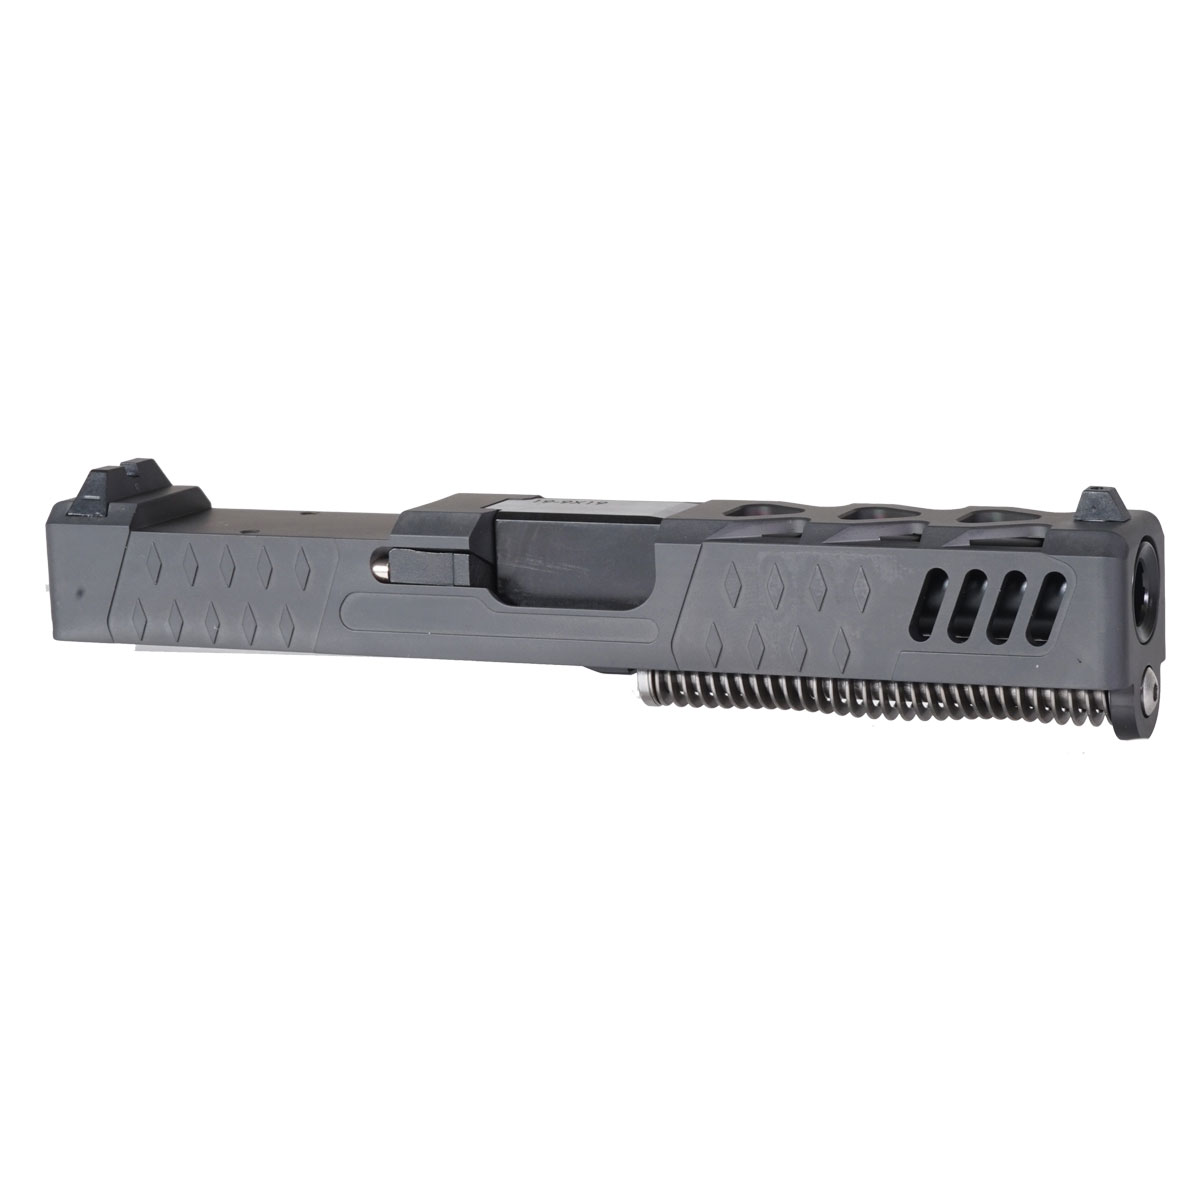 DD 'The Sarah' 9mm Complete Slide Kit - Glock 19 Gen 1-3 Compatible